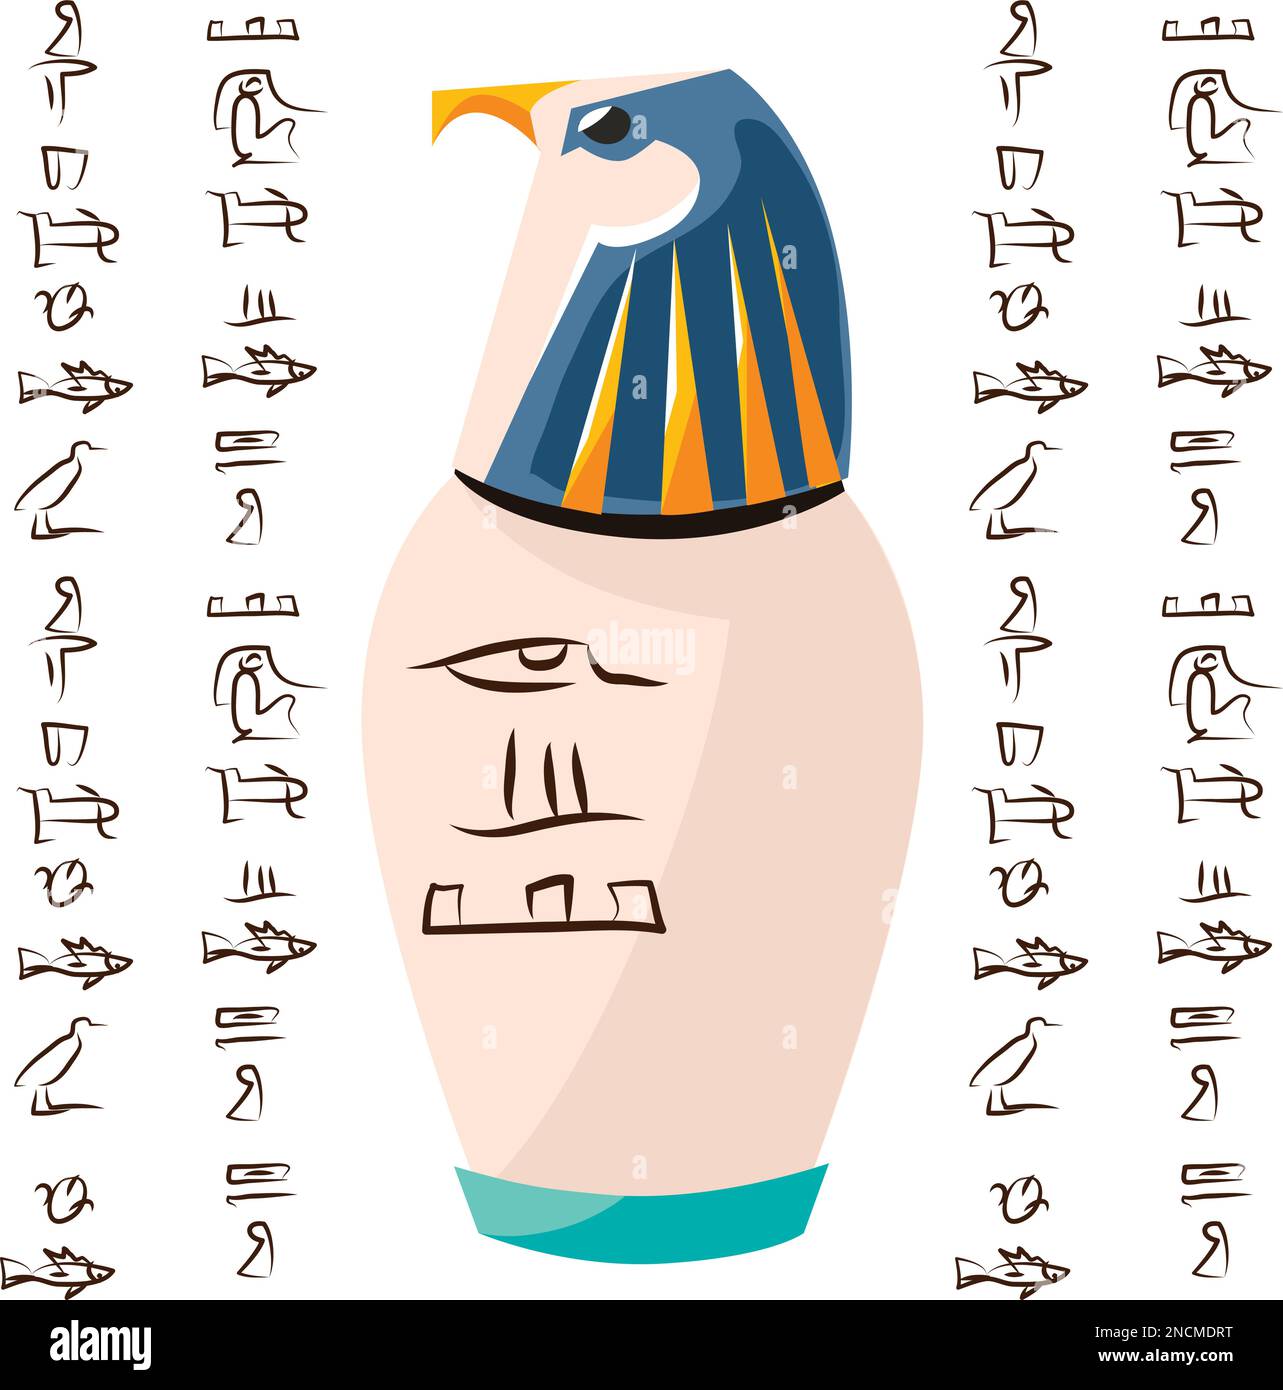 Alte ägyptische Ritualvase mit Falkenkopf und Hieroglyphen Cartoons Vektordarstellung. Dekorative Urne für Opfer für sonnengott Ra oder Aufbewahrung von Tempelschätzen, isoliert auf weißem Hintergrund Stock Vektor